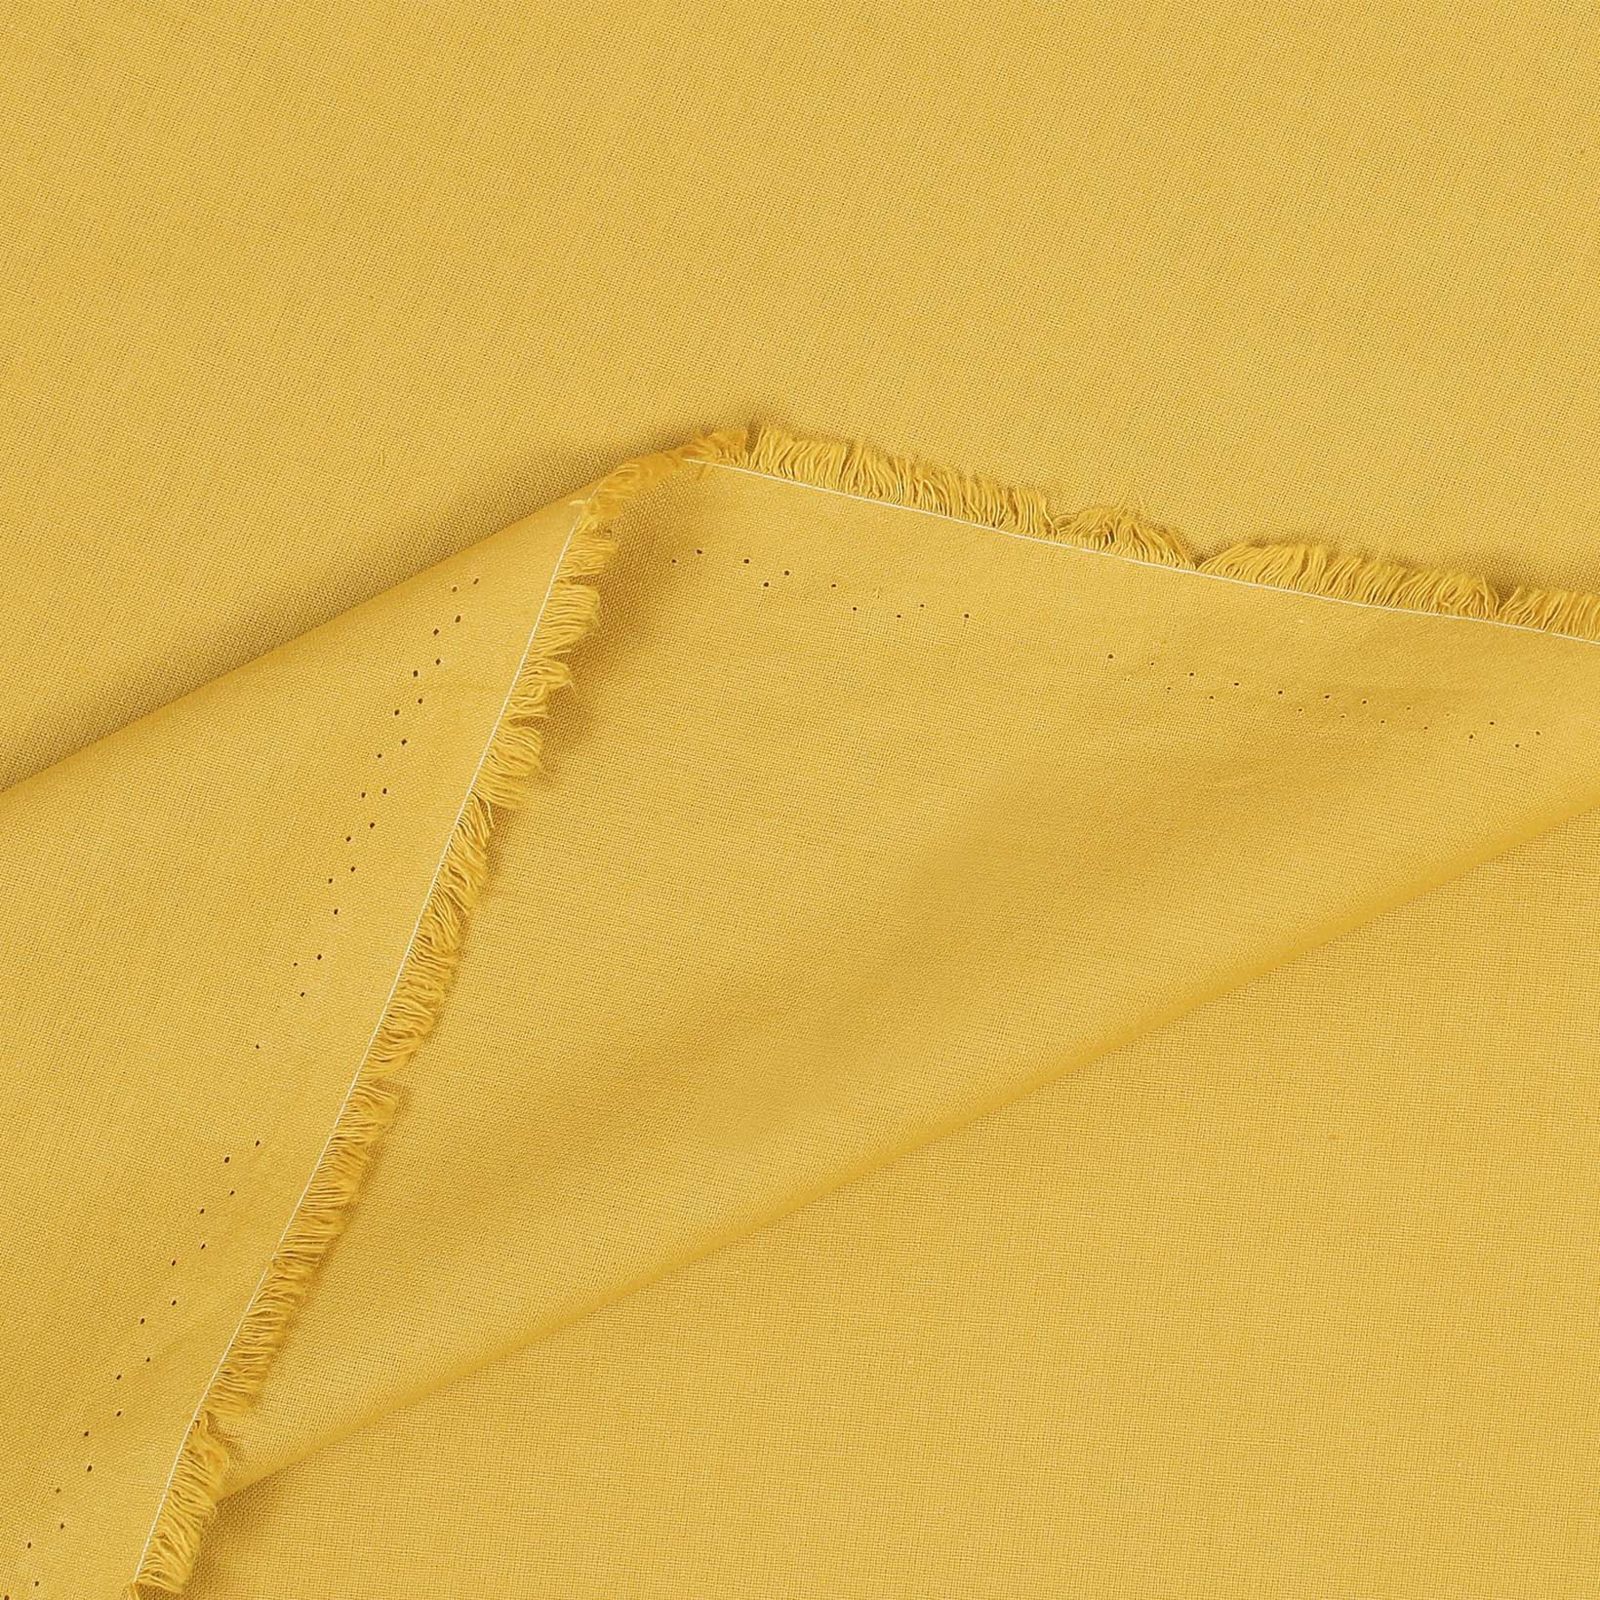 Bavlnená jednofarebná látka - plátno Suzy - medovo žltá